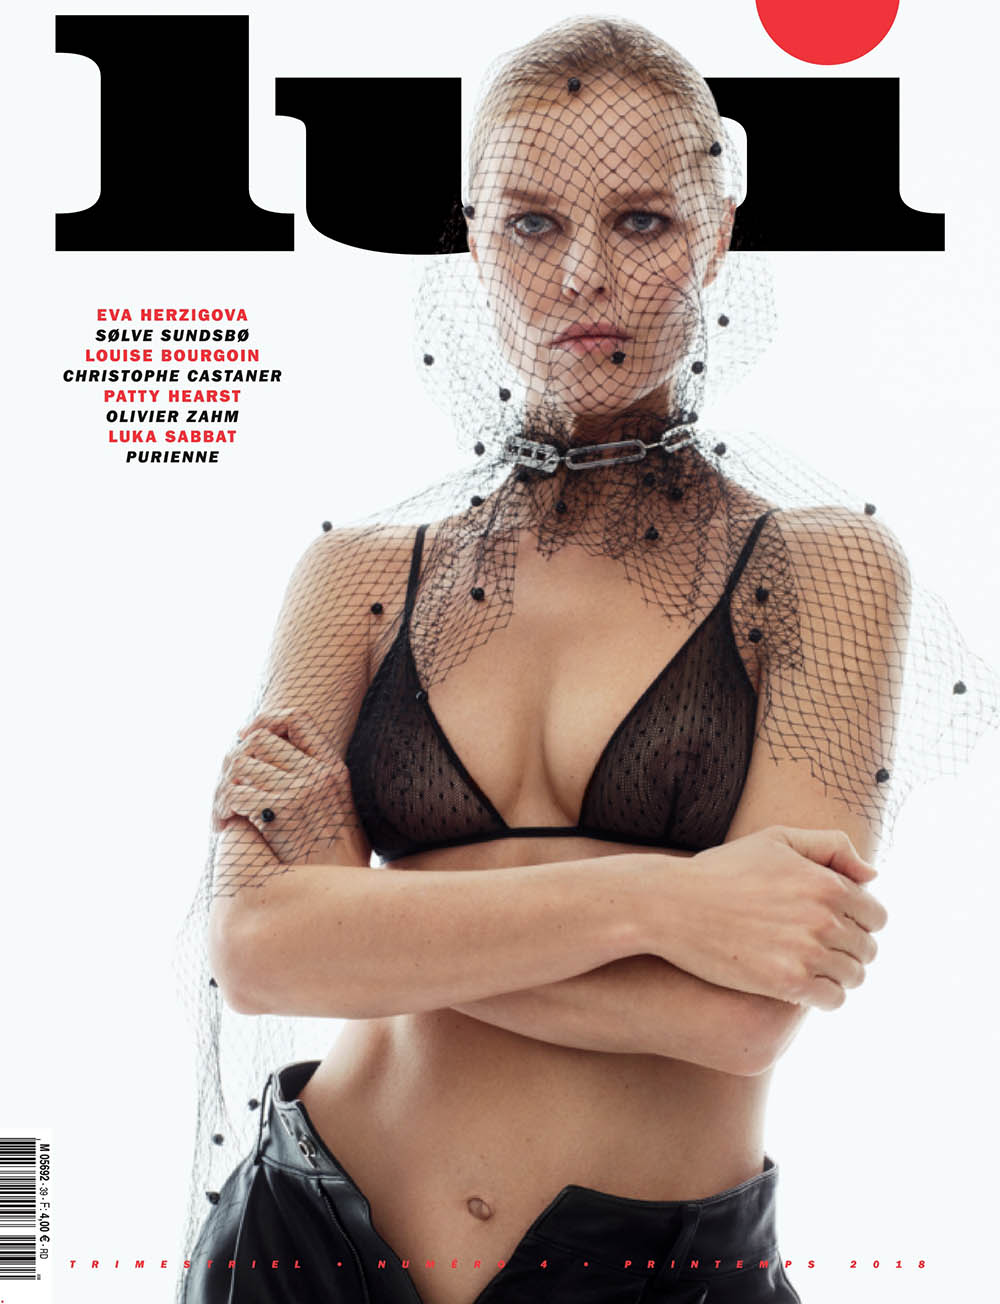 Eva Herzigova covers Lui Magazine Spring 2018 by Sølve Sundsbø